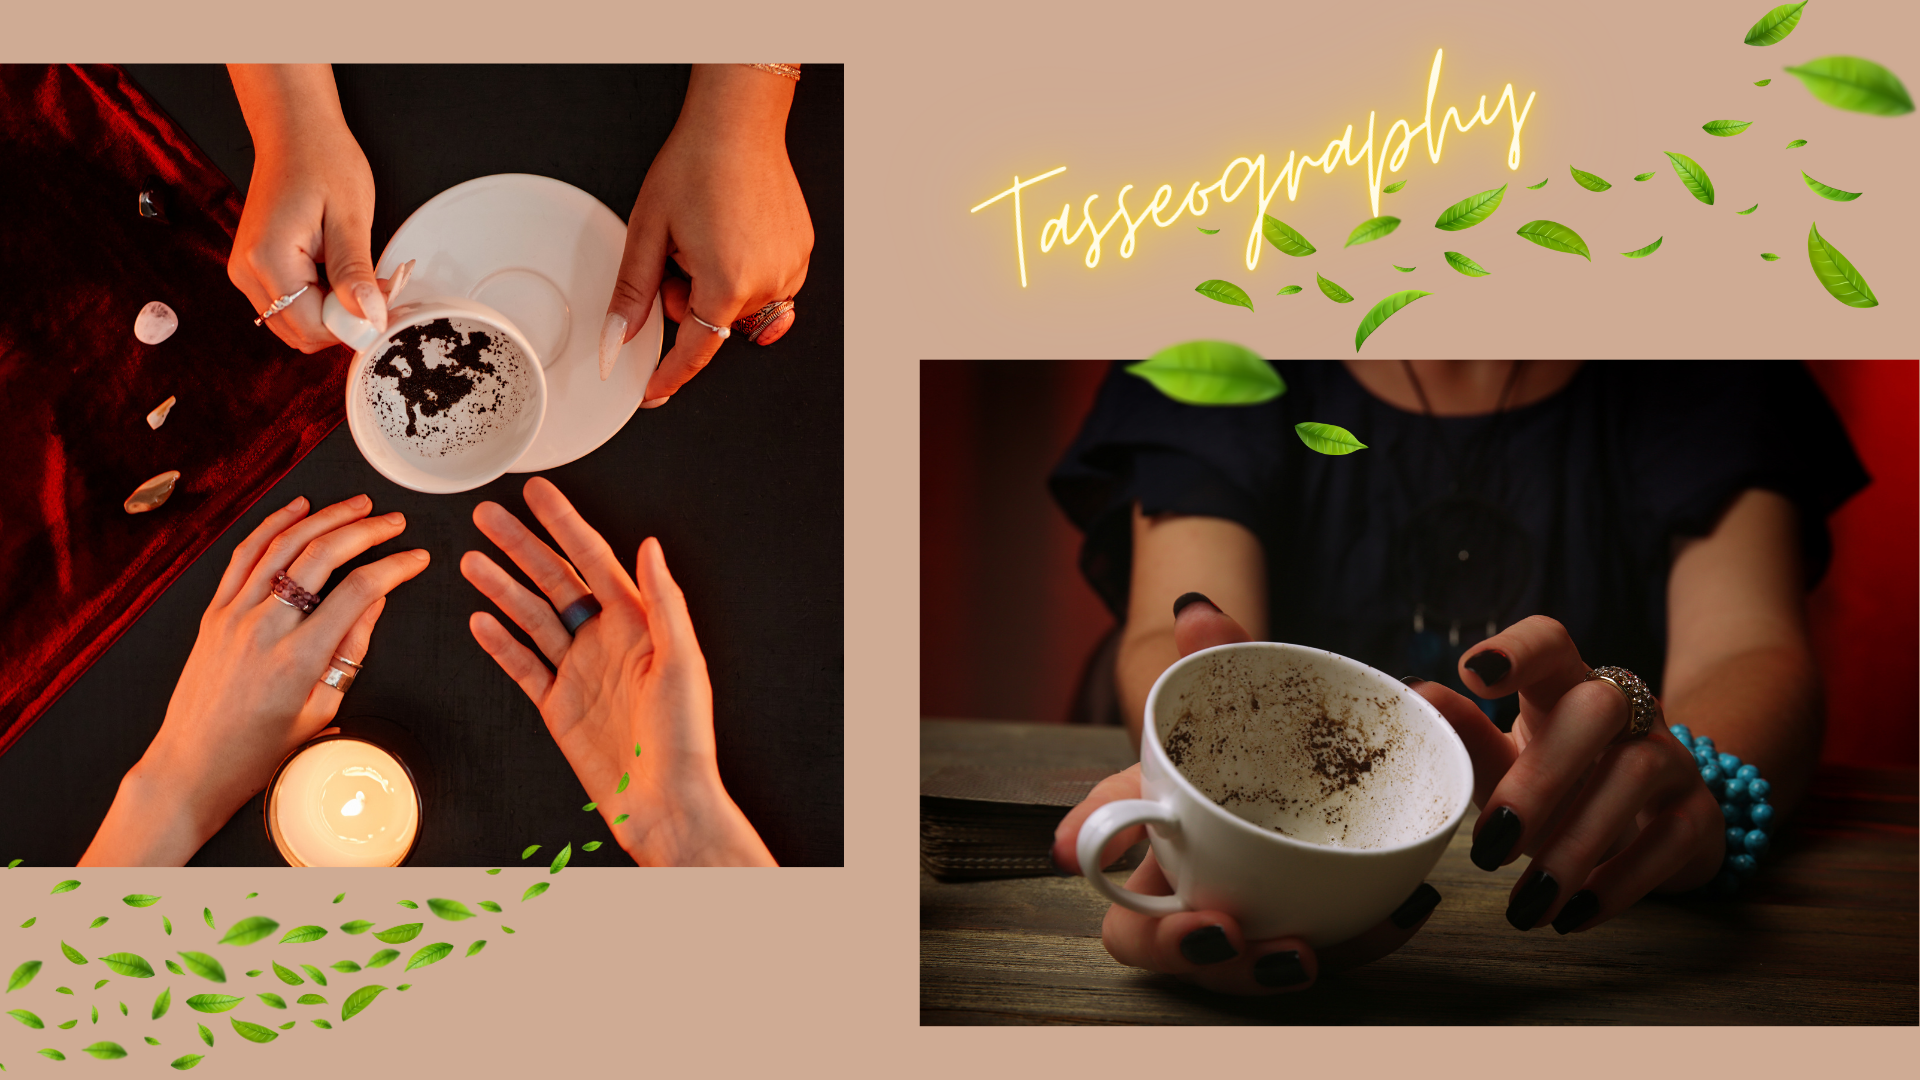 タセオグラフィーでは茶葉でシンボルリーディングをします